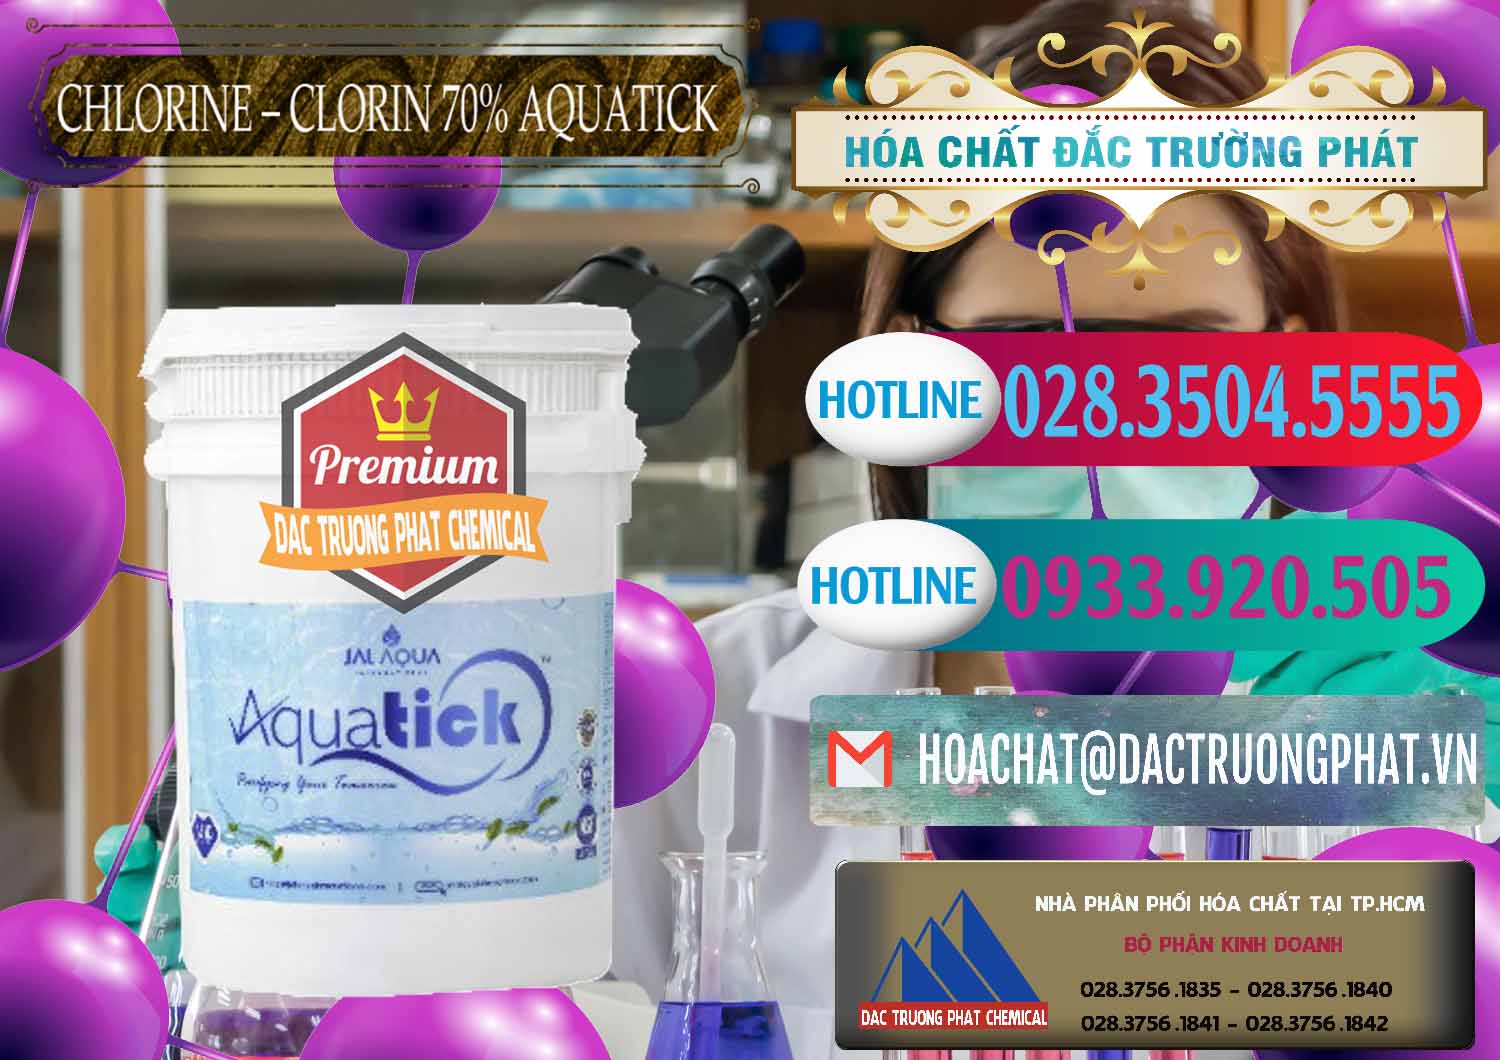 Cty chuyên phân phối và bán Chlorine – Clorin 70% Aquatick Thùng Cao Jal Aqua Ấn Độ India - 0237 - Chuyên kinh doanh - phân phối hóa chất tại TP.HCM - truongphat.vn